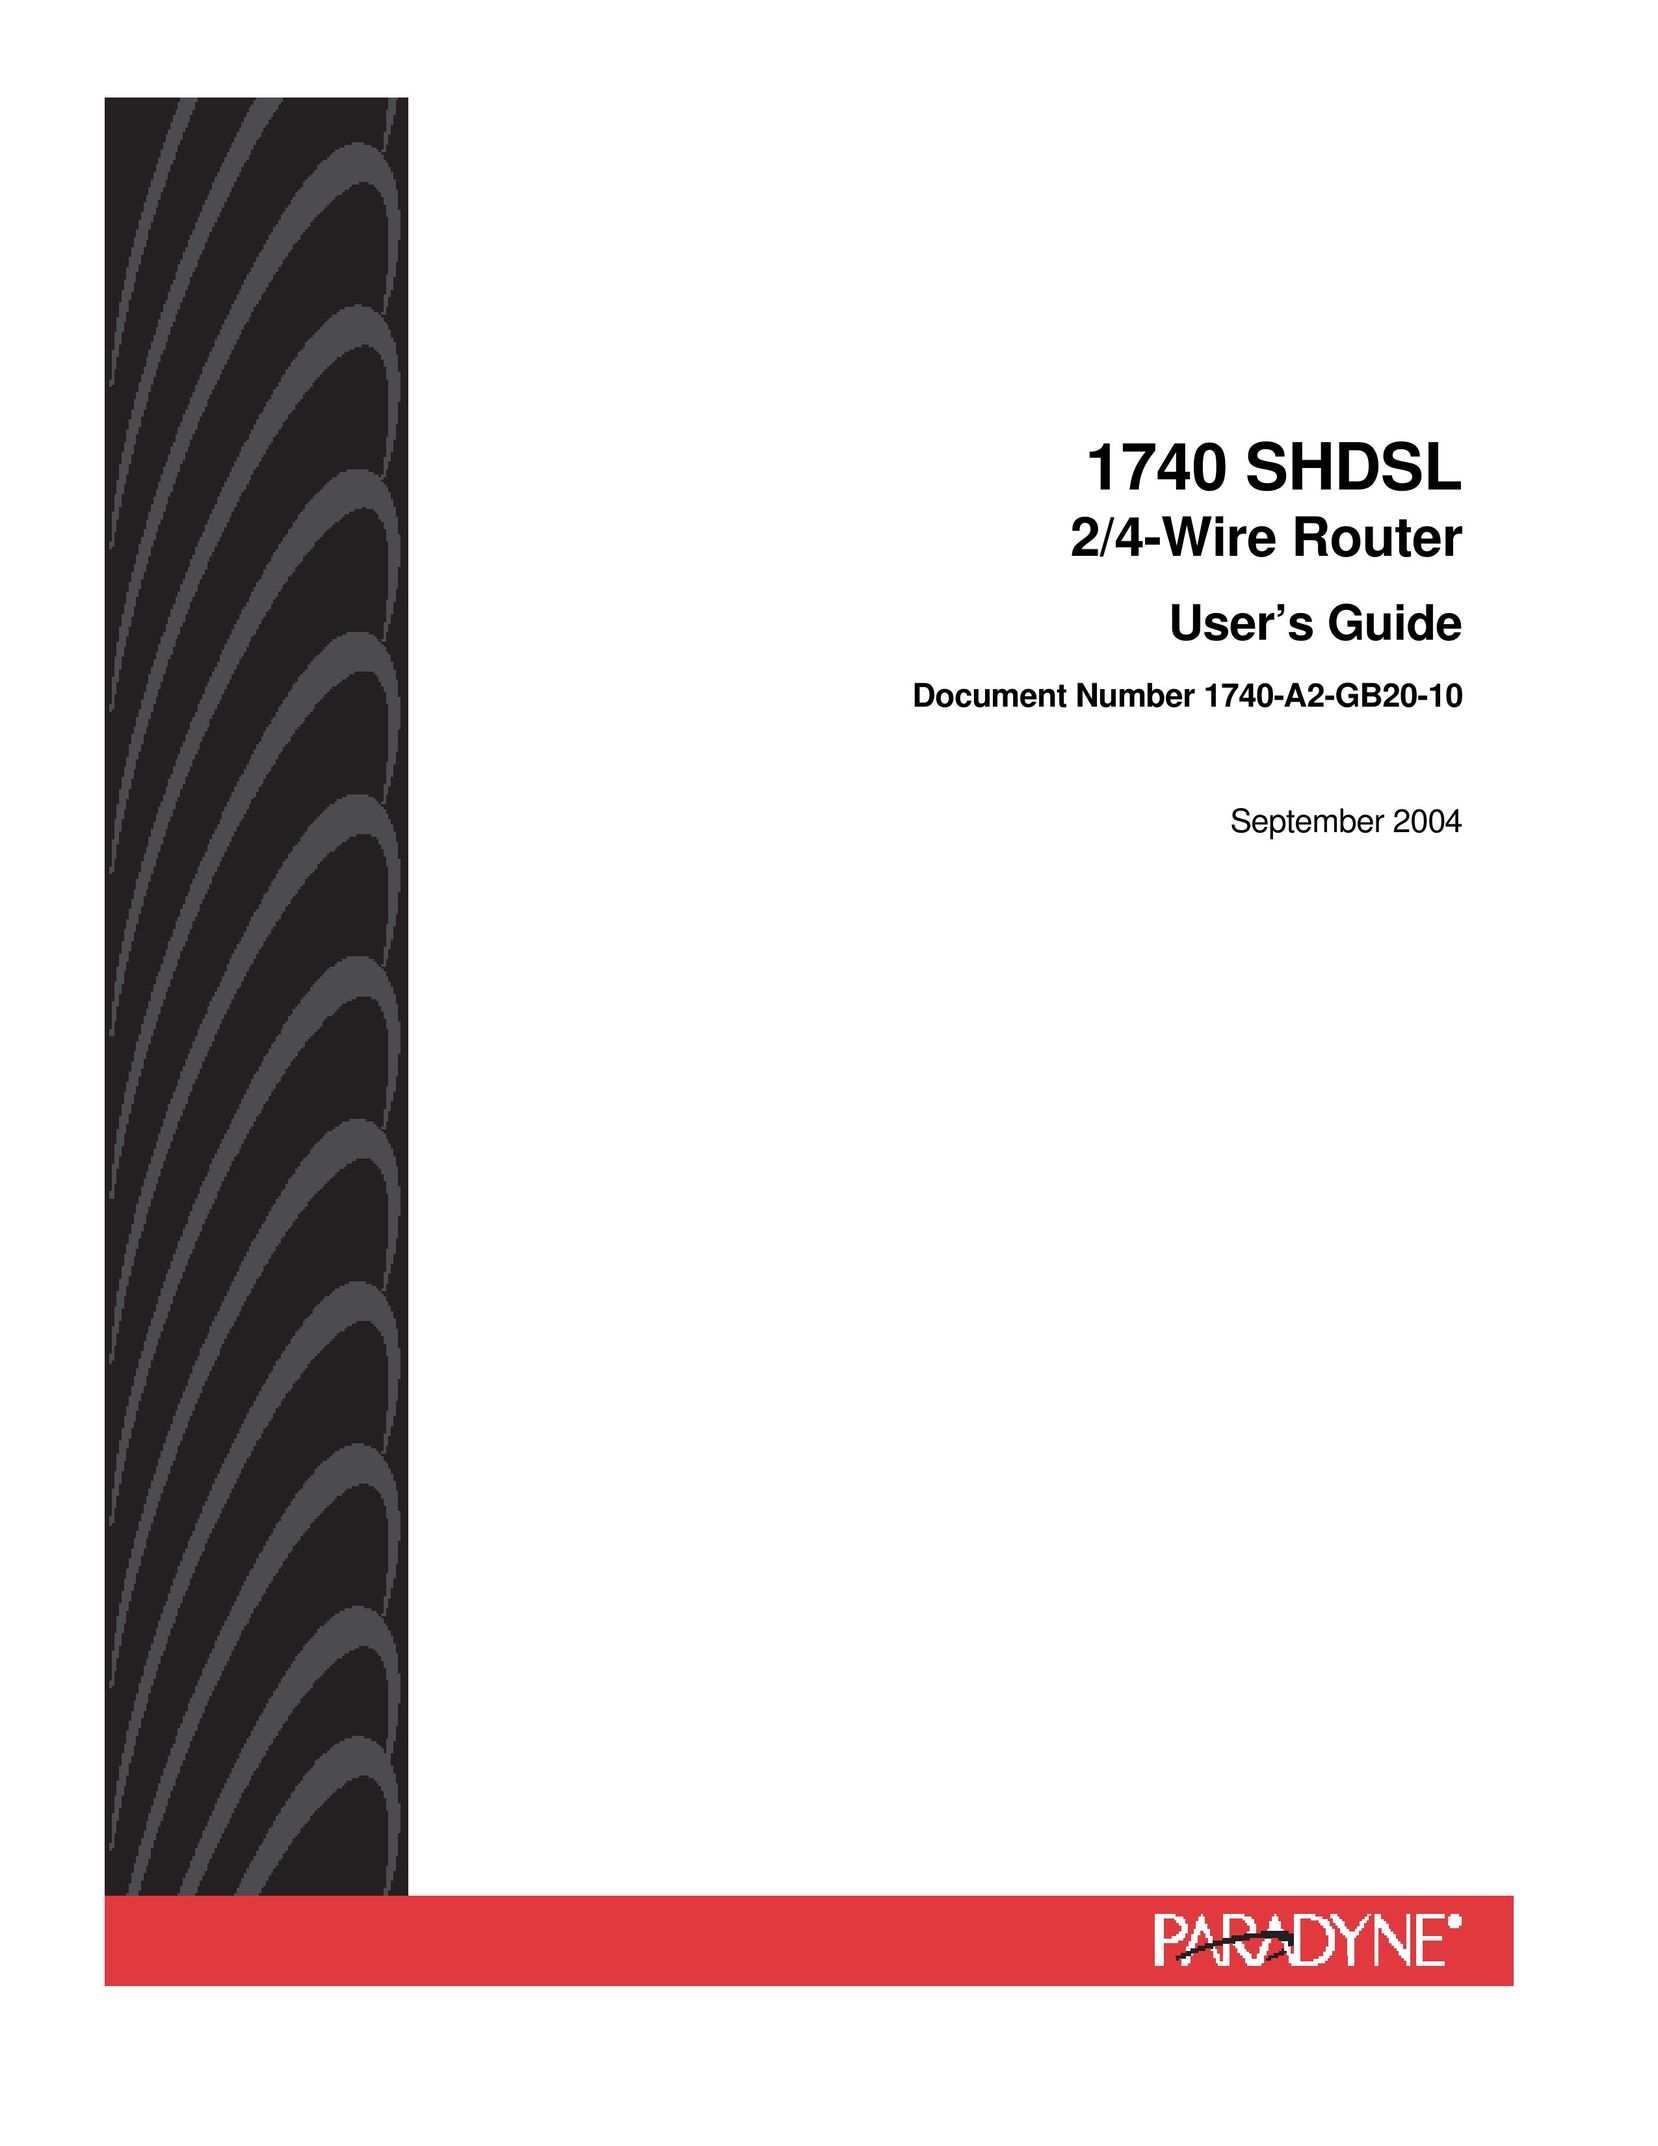 HP (Hewlett-Packard) 1740 SHDSL Network Router User Manual